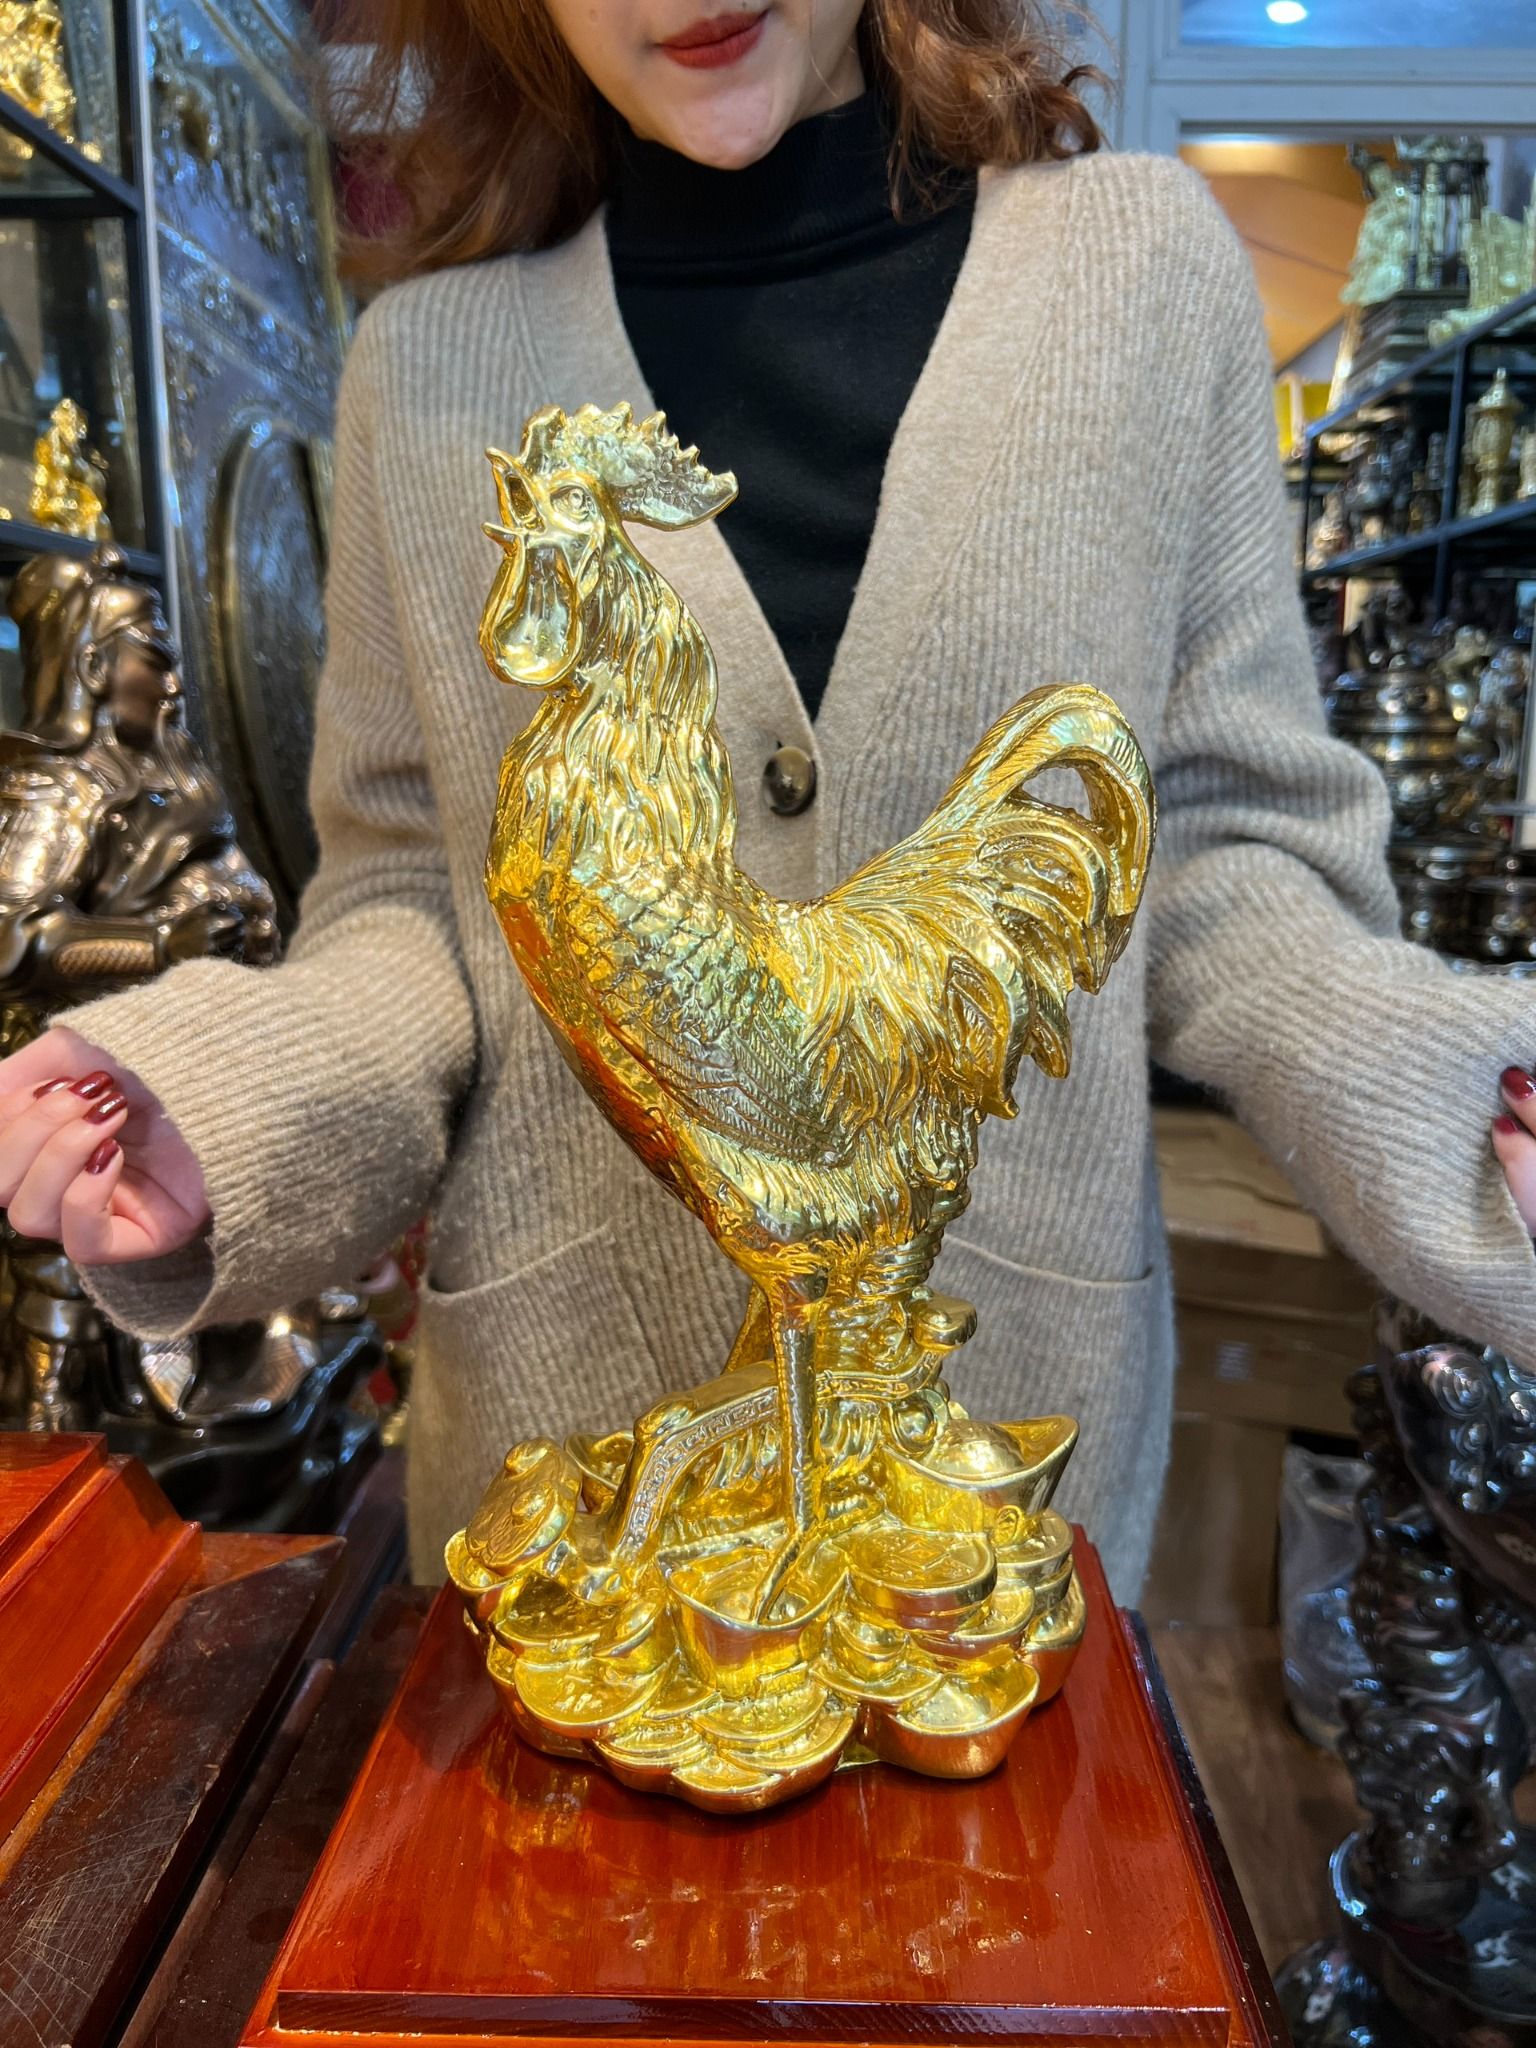 Quà tặng sếp tuổi dậu: tượng gà như ý phong thủy bằng đồng dát vàng 24k